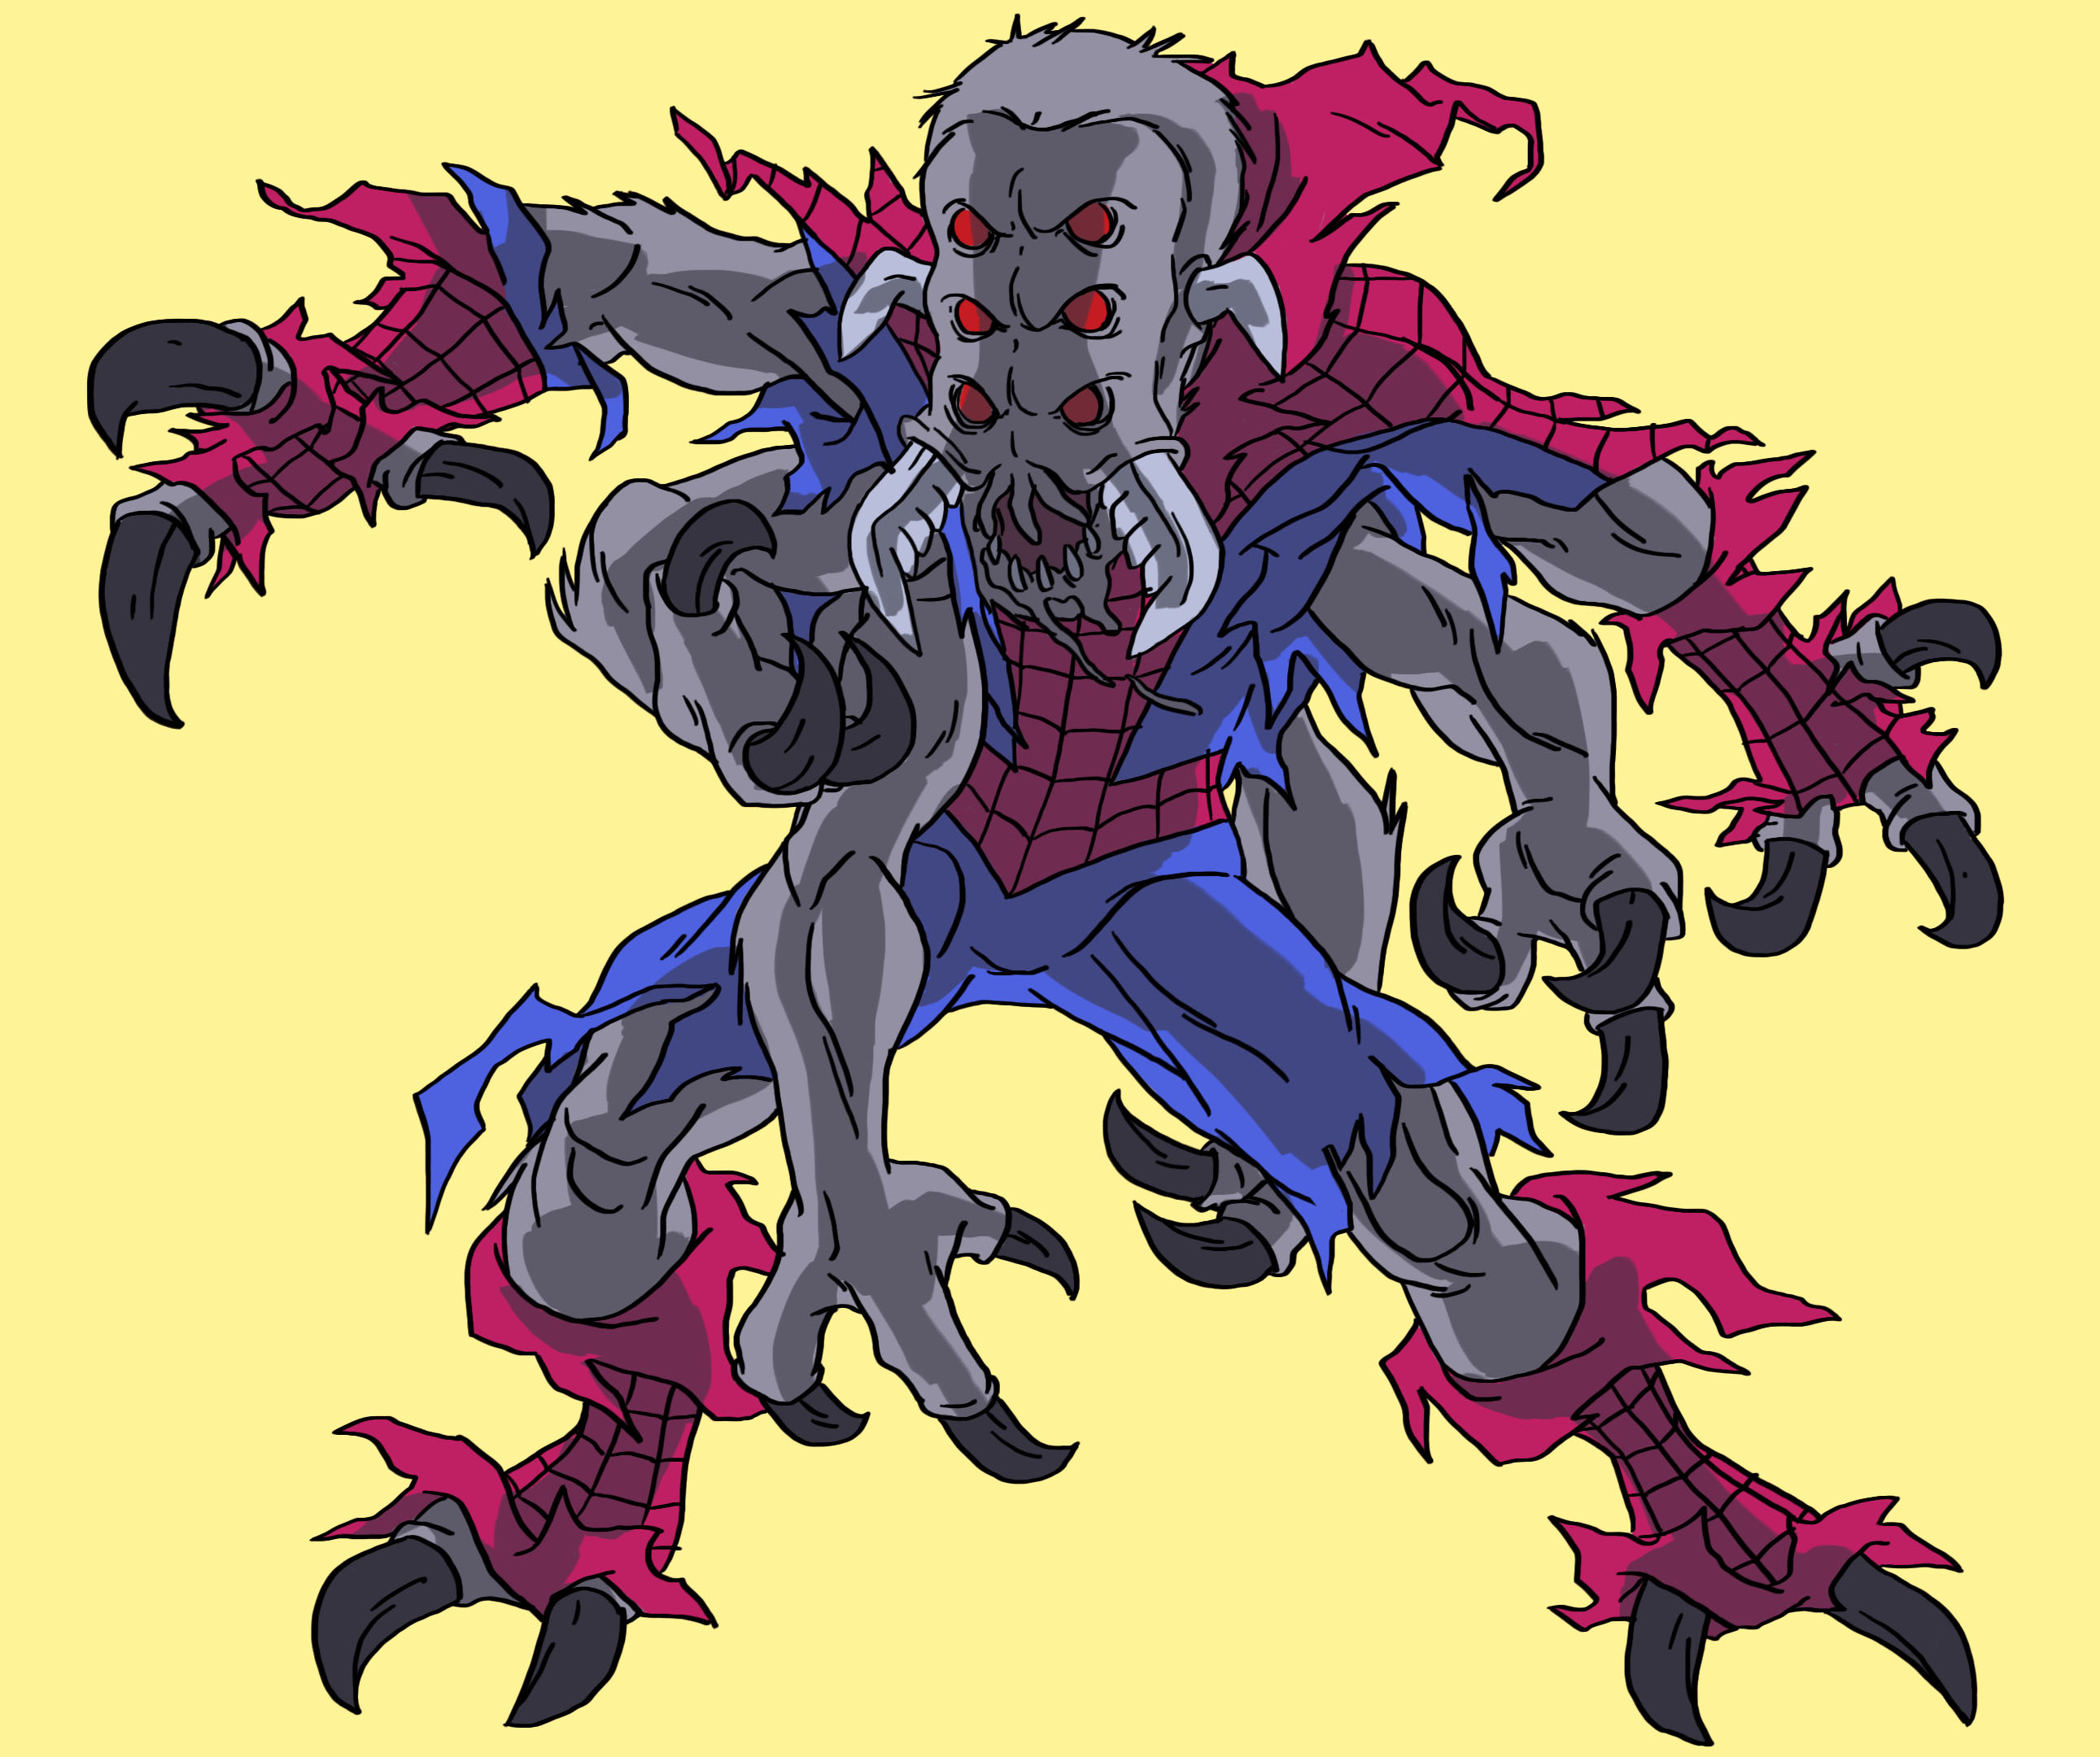 Spider Man TAS Man-Spider by stalnososkoviy on DeviantArt